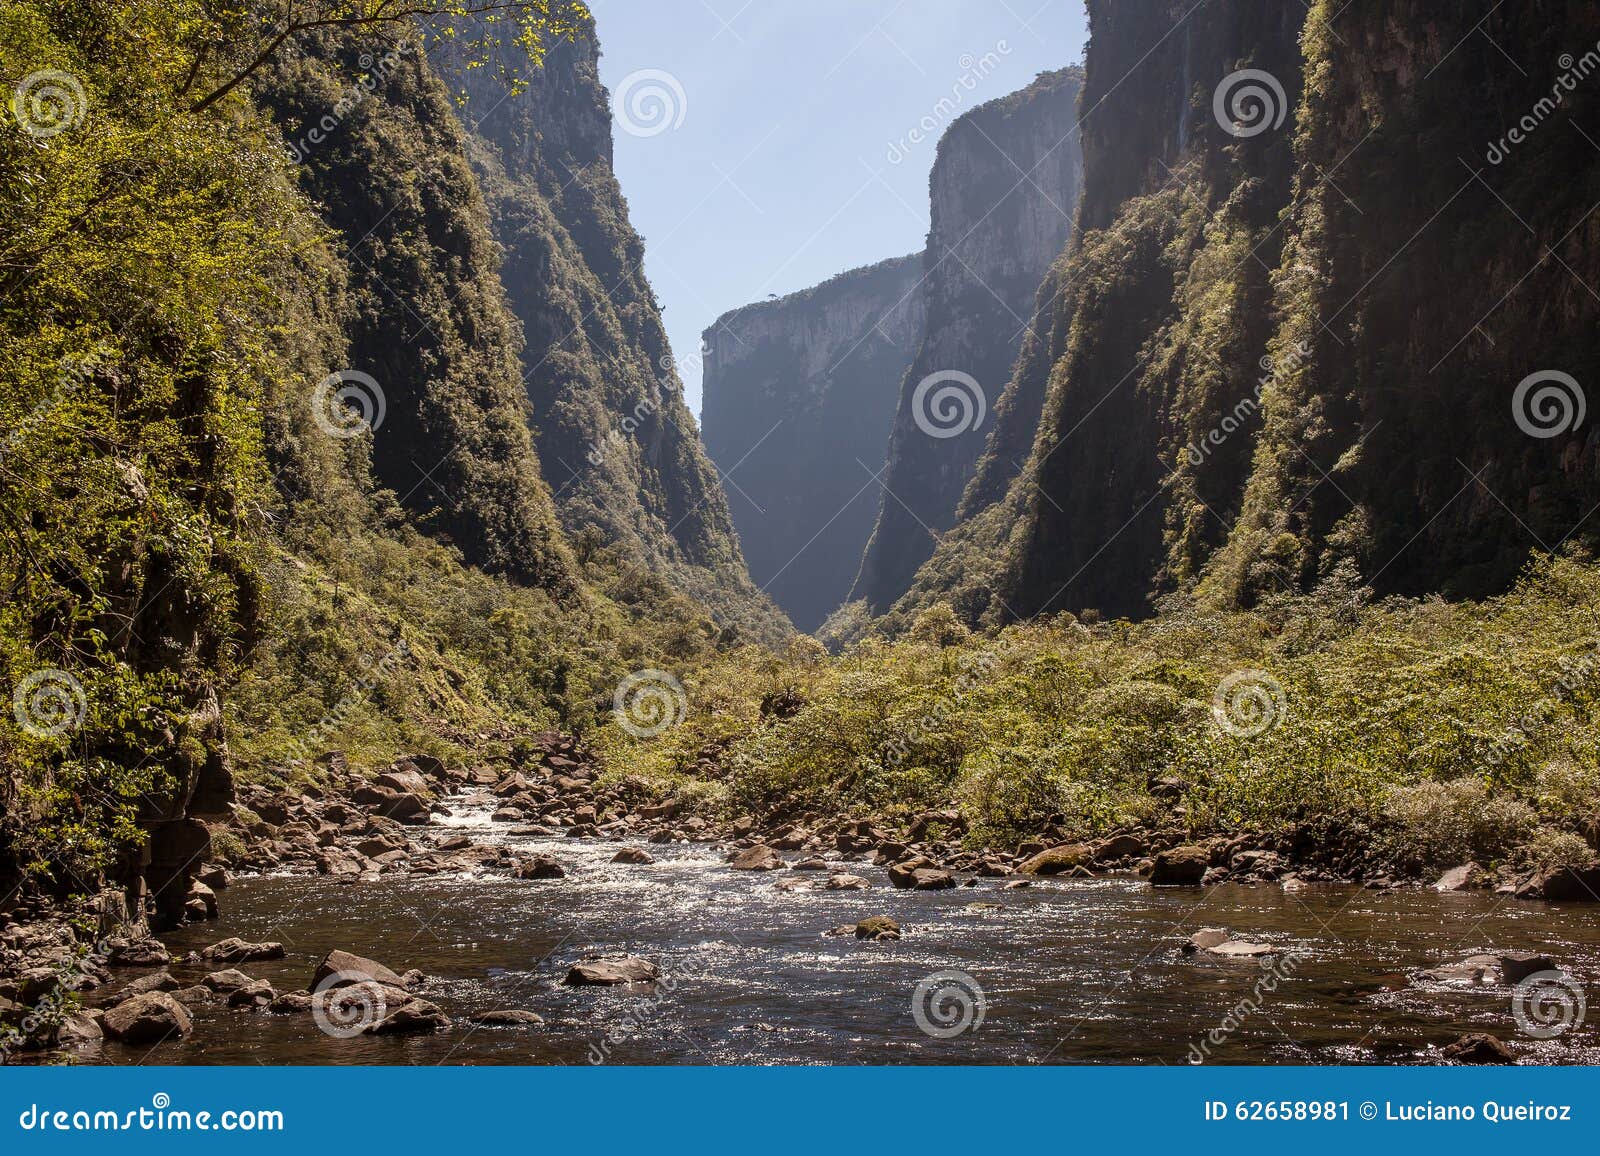 ox river, at canion itaimbezinho - aparados da serra nat park